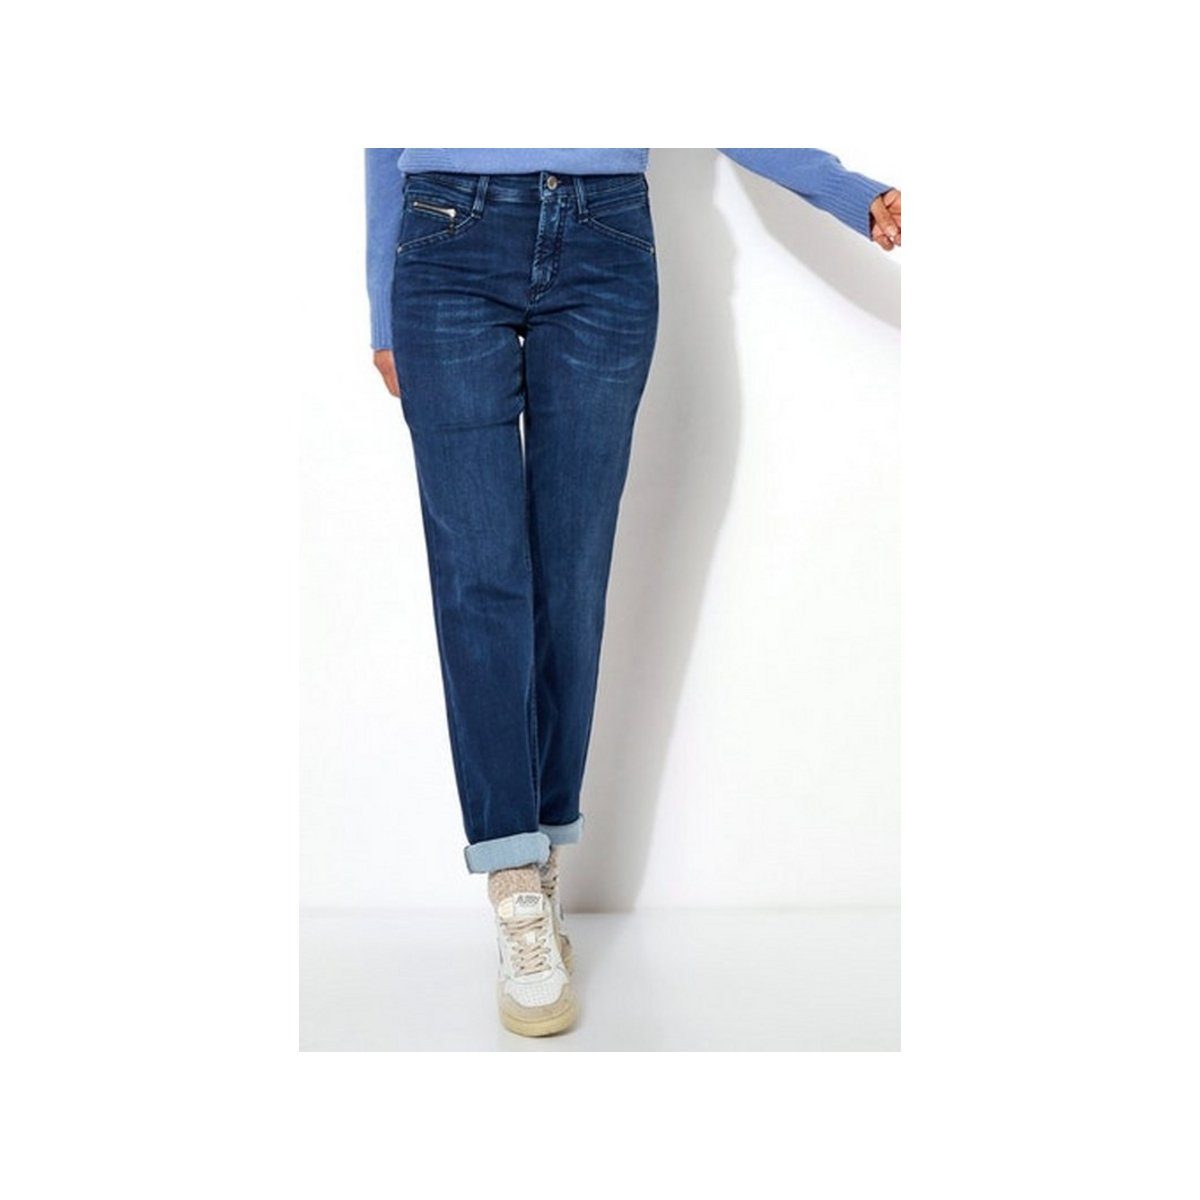 (1-tlg) dark 5-Pocket-Jeans dunkel-blau 584 blue used TONI